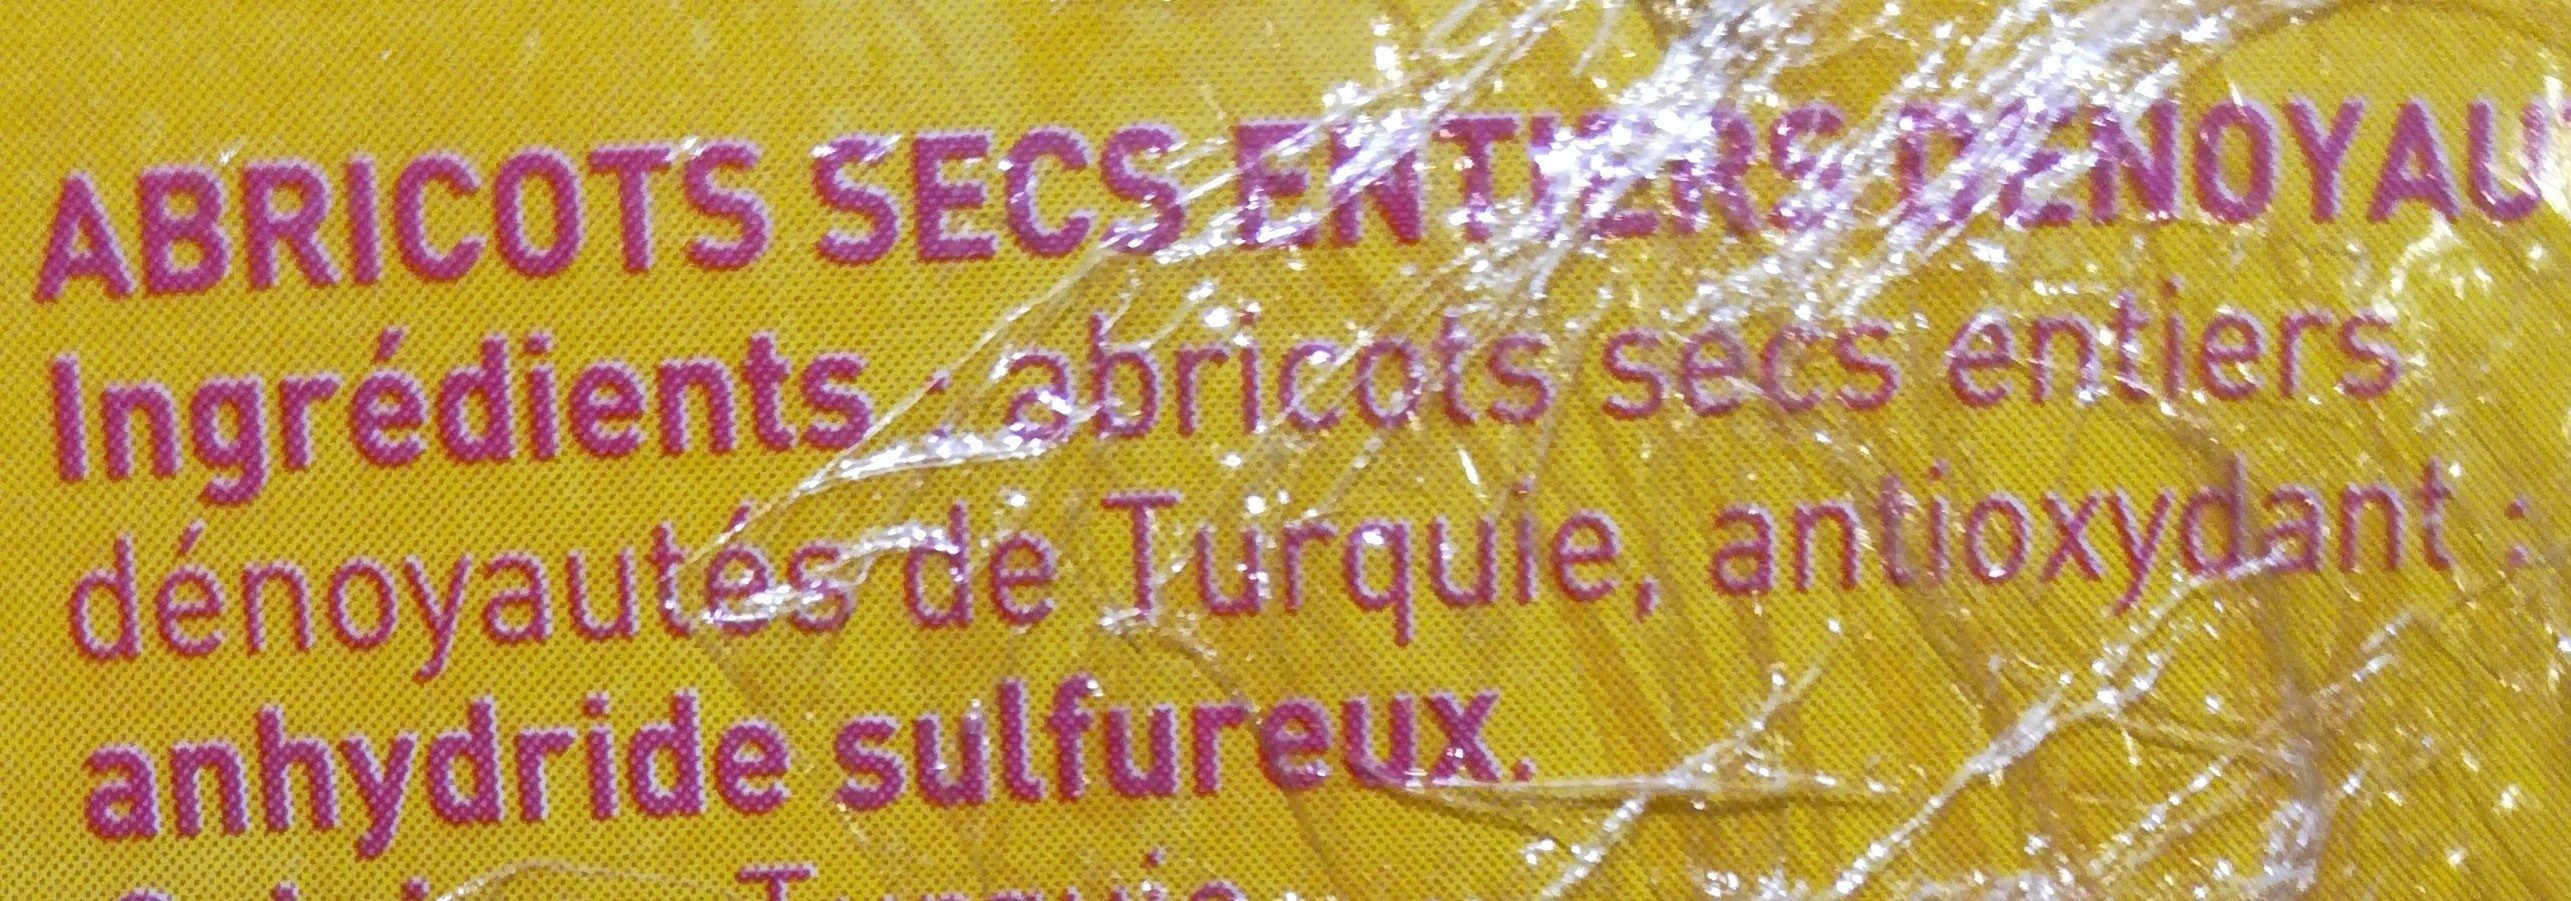 Abricots secs - Ingrediënten - fr